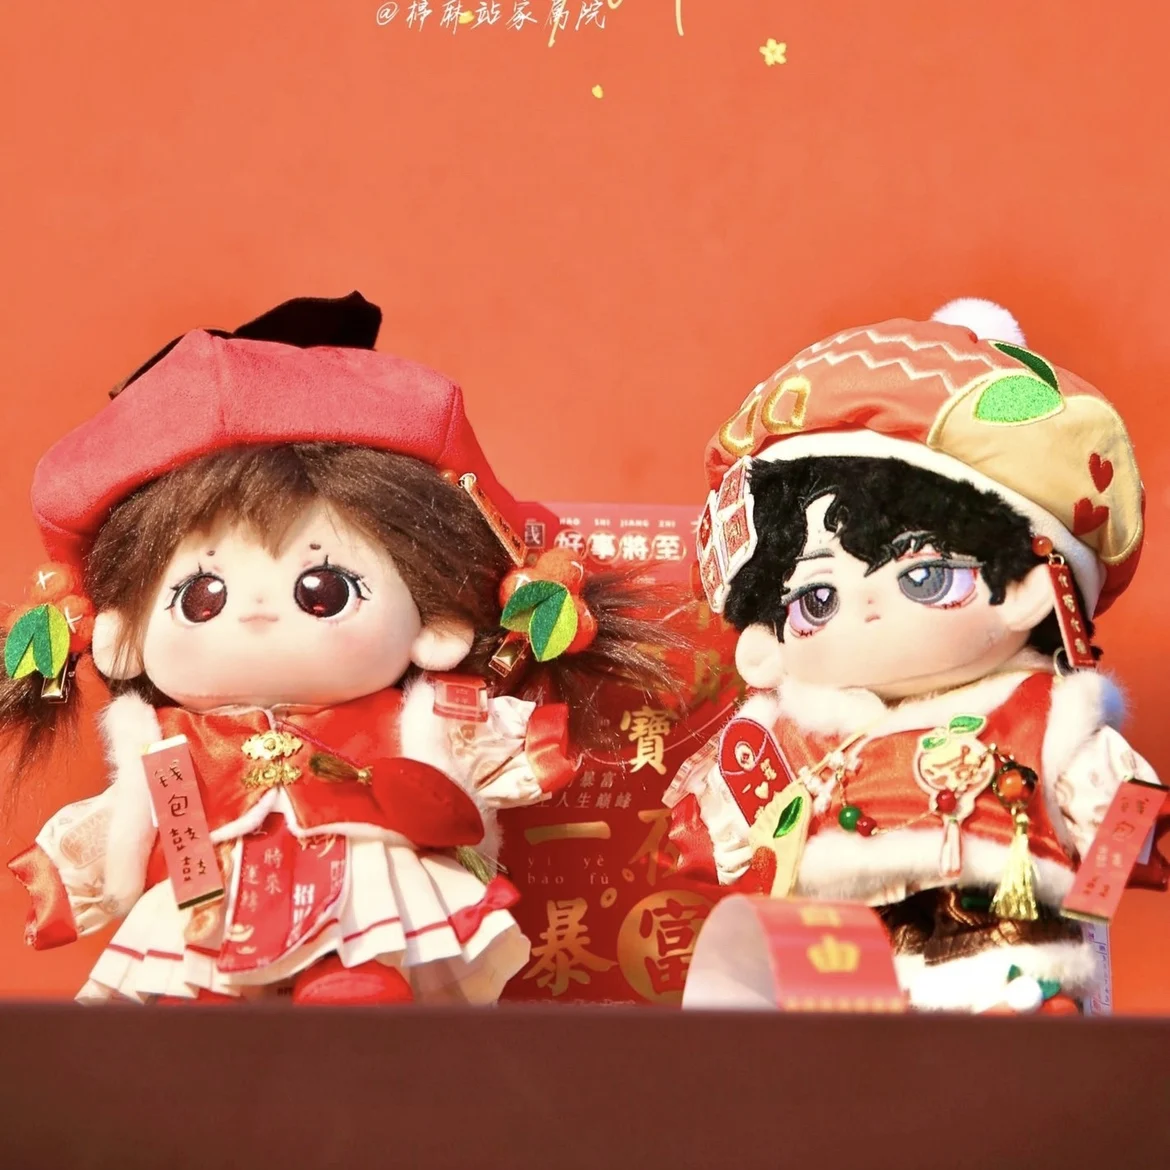 

Милый китайский новогодний костюм для 20 см без атрибутов, плюшевая кукла, сменная одежда, наряд, игрушка для косплея, подарок на день рождения